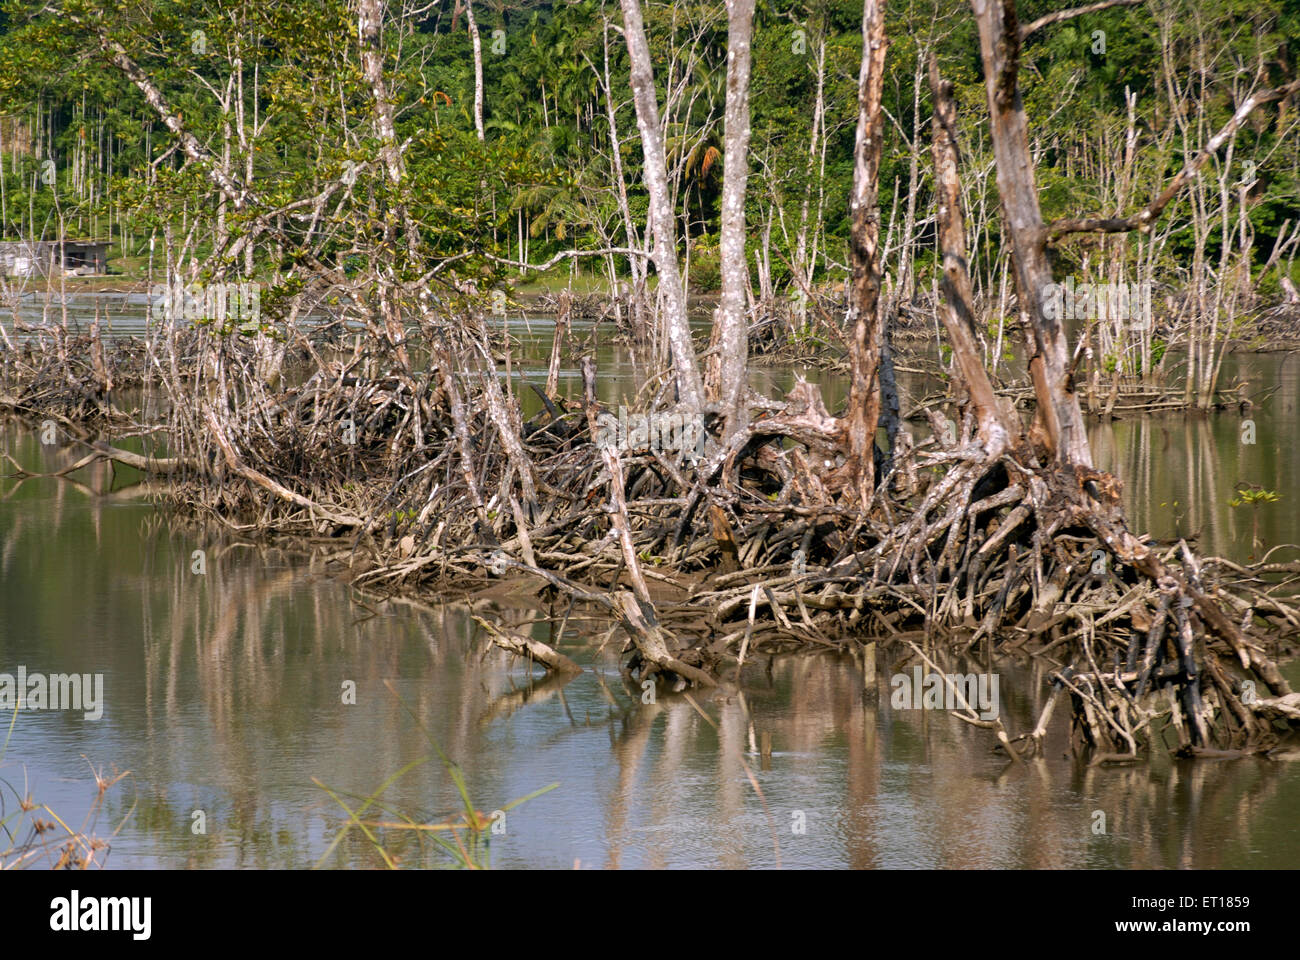 Racines de mangrove, île Red Skin, parc national marin, Port Blair, îles Andaman et Nicobar, territoire de l'Union de l'Inde, UT, Inde, Asie Banque D'Images